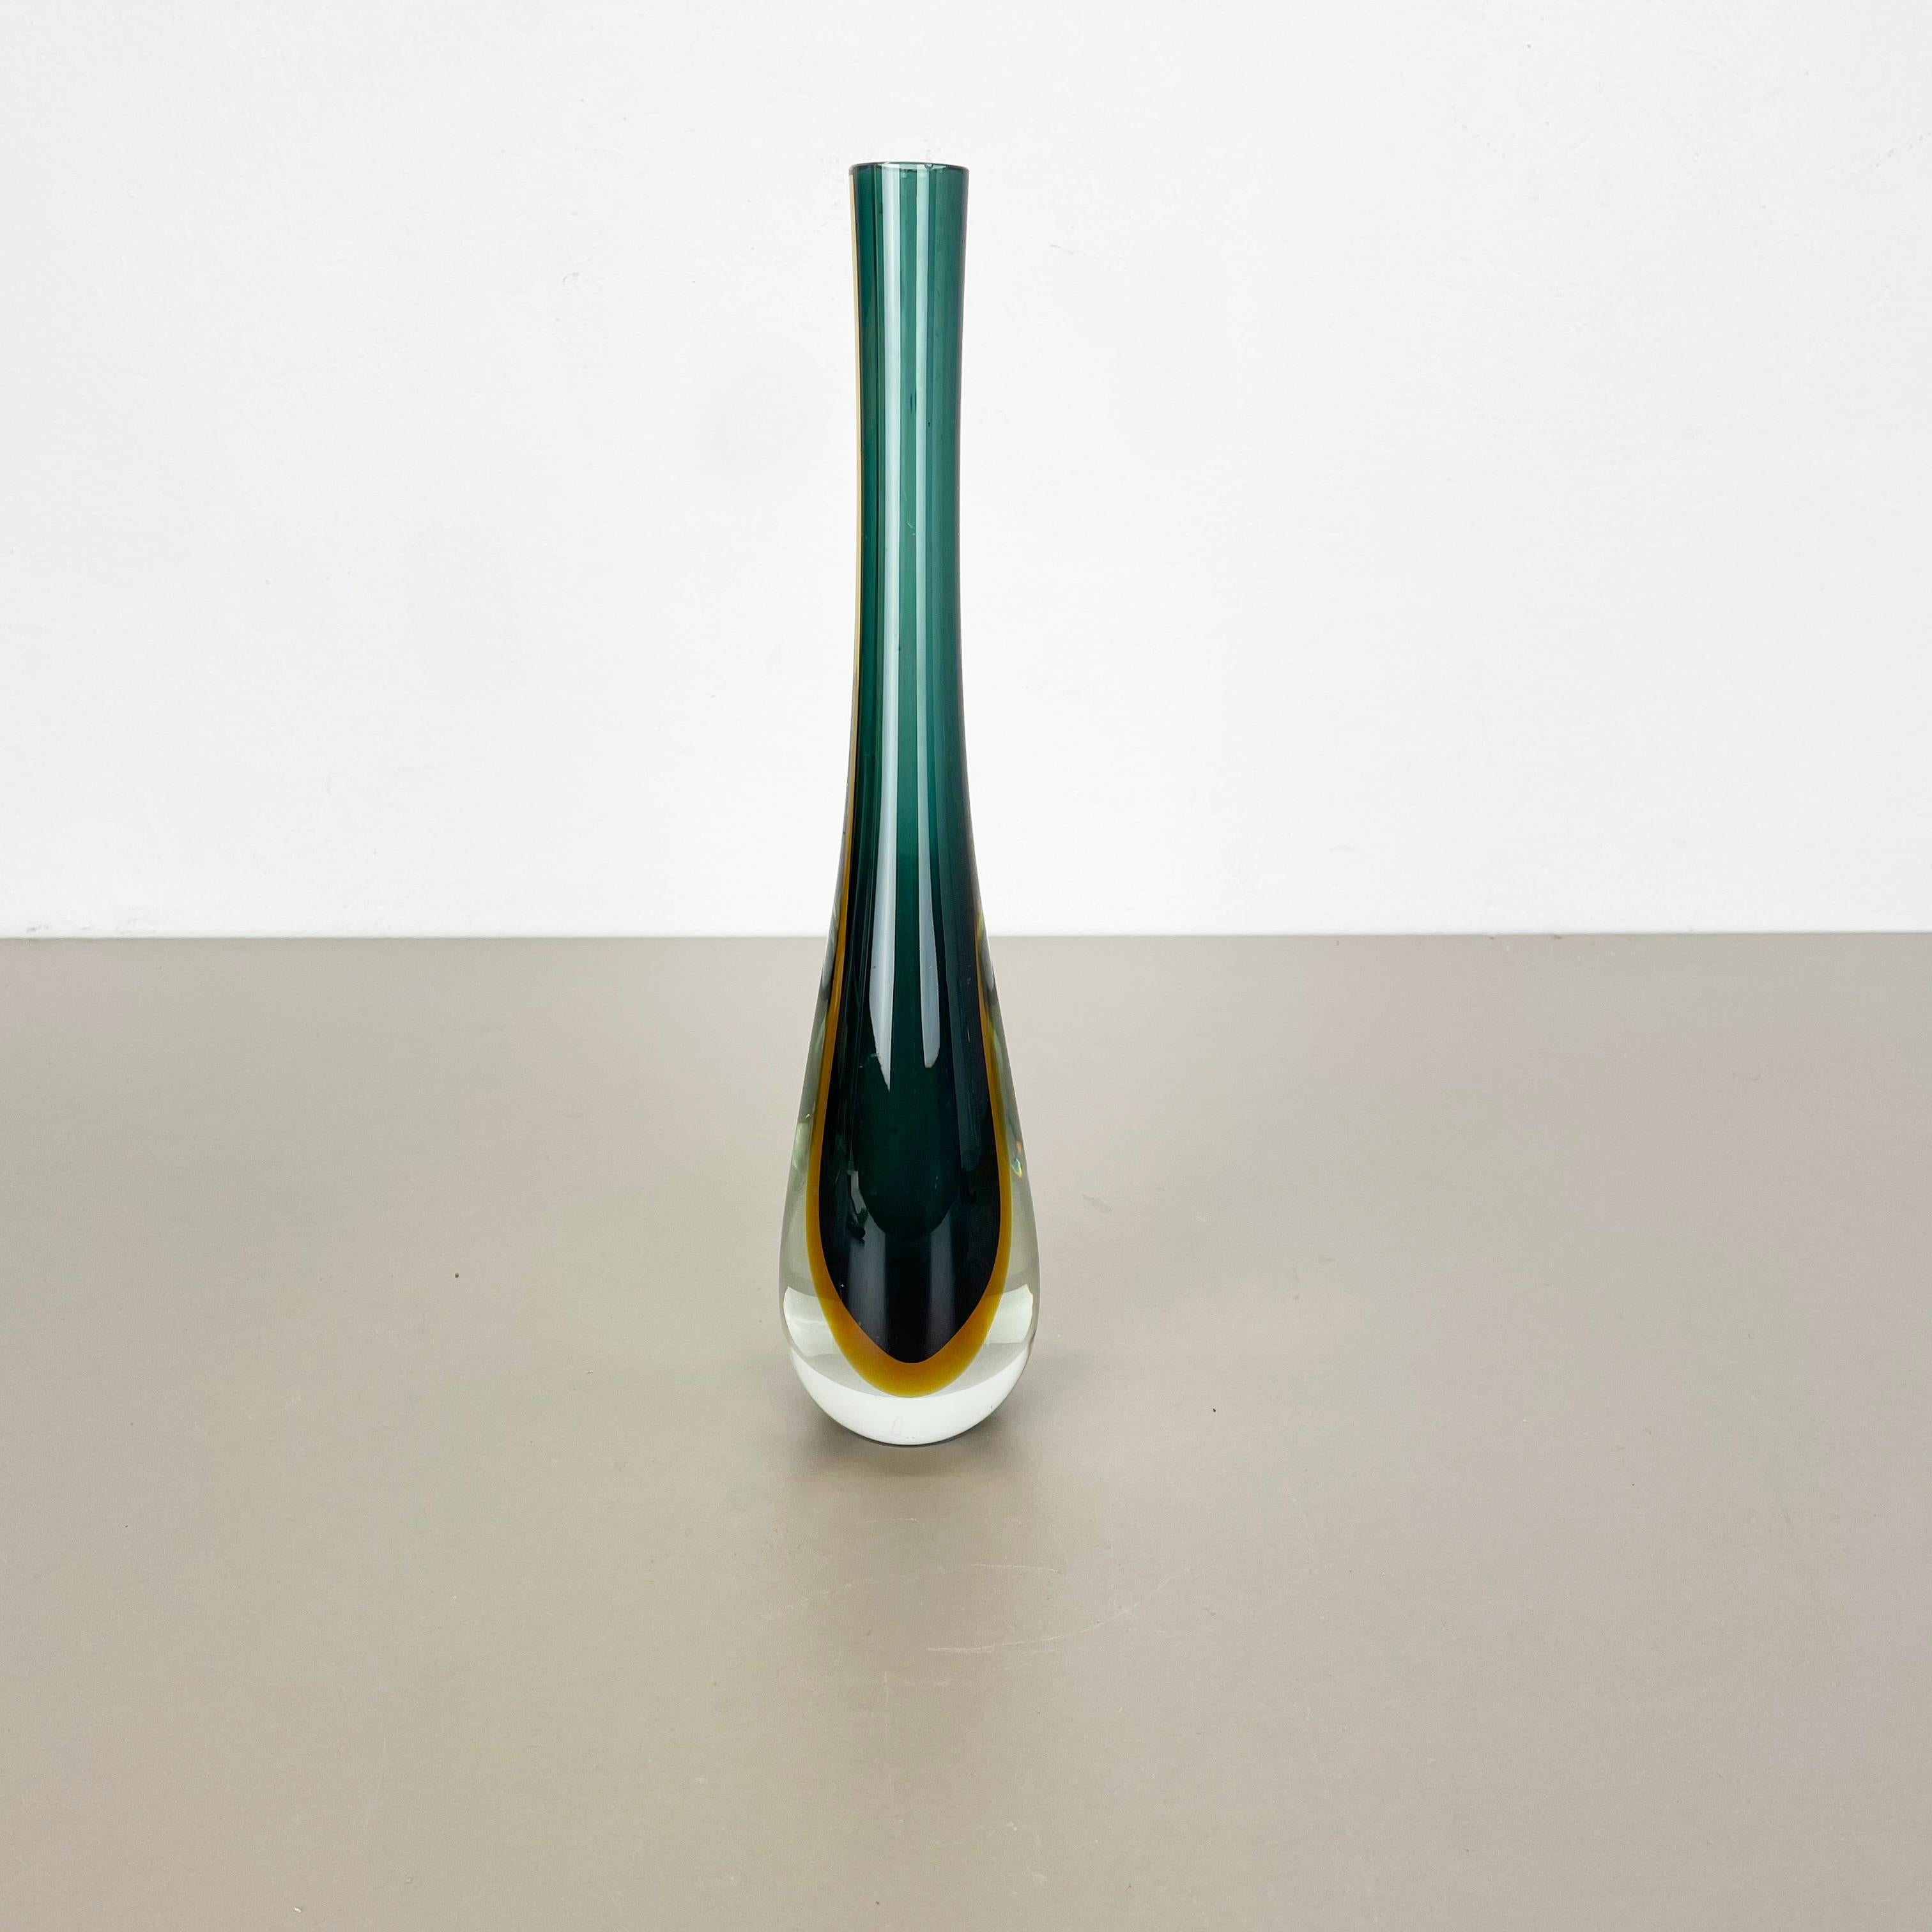 Artikel:

Vase aus Muranoglas


Herkunft:

Murano, Italien


Entwurf:

Flavio Poli zugeschrieben


Jahrzehnt:

1970s



Diese originelle Vintage-Glasvase wurde von Flavio Poli entworfen und in den 1970er Jahren in Murano,